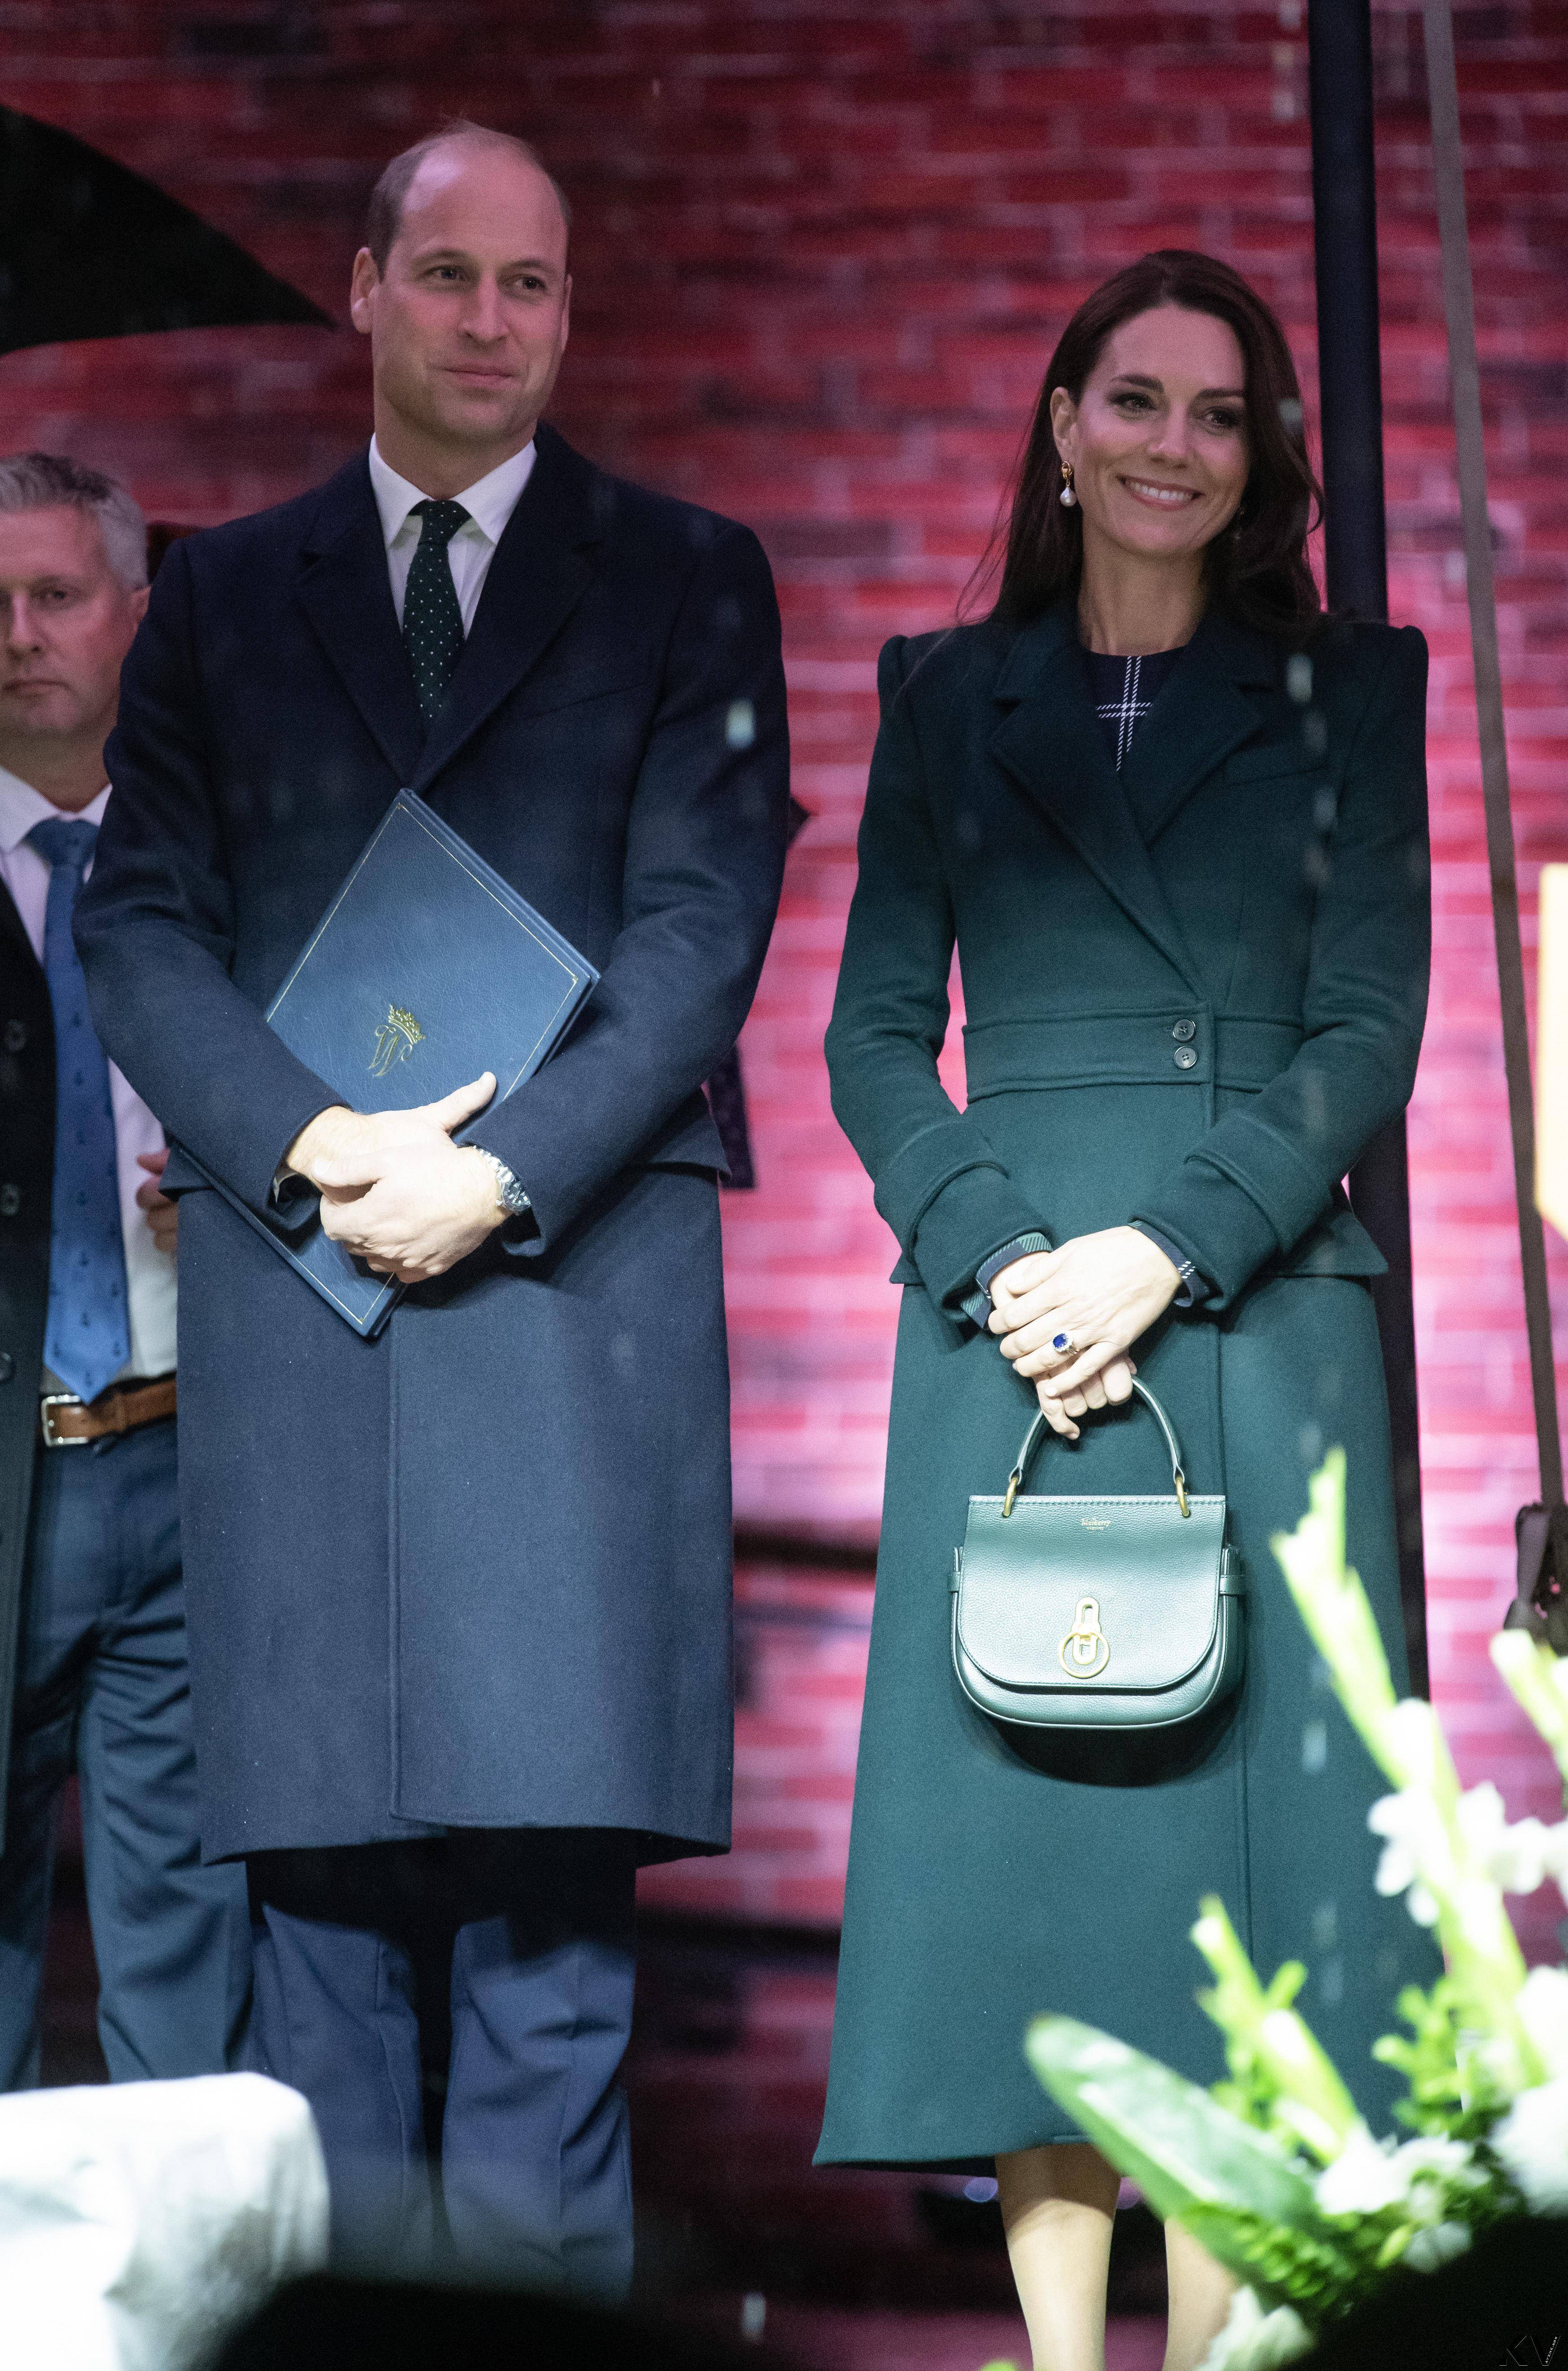 凯特王妃绿格纹裙勾纤细腰身　访美时尚外交获外媒盛赞 名人名流 图4张